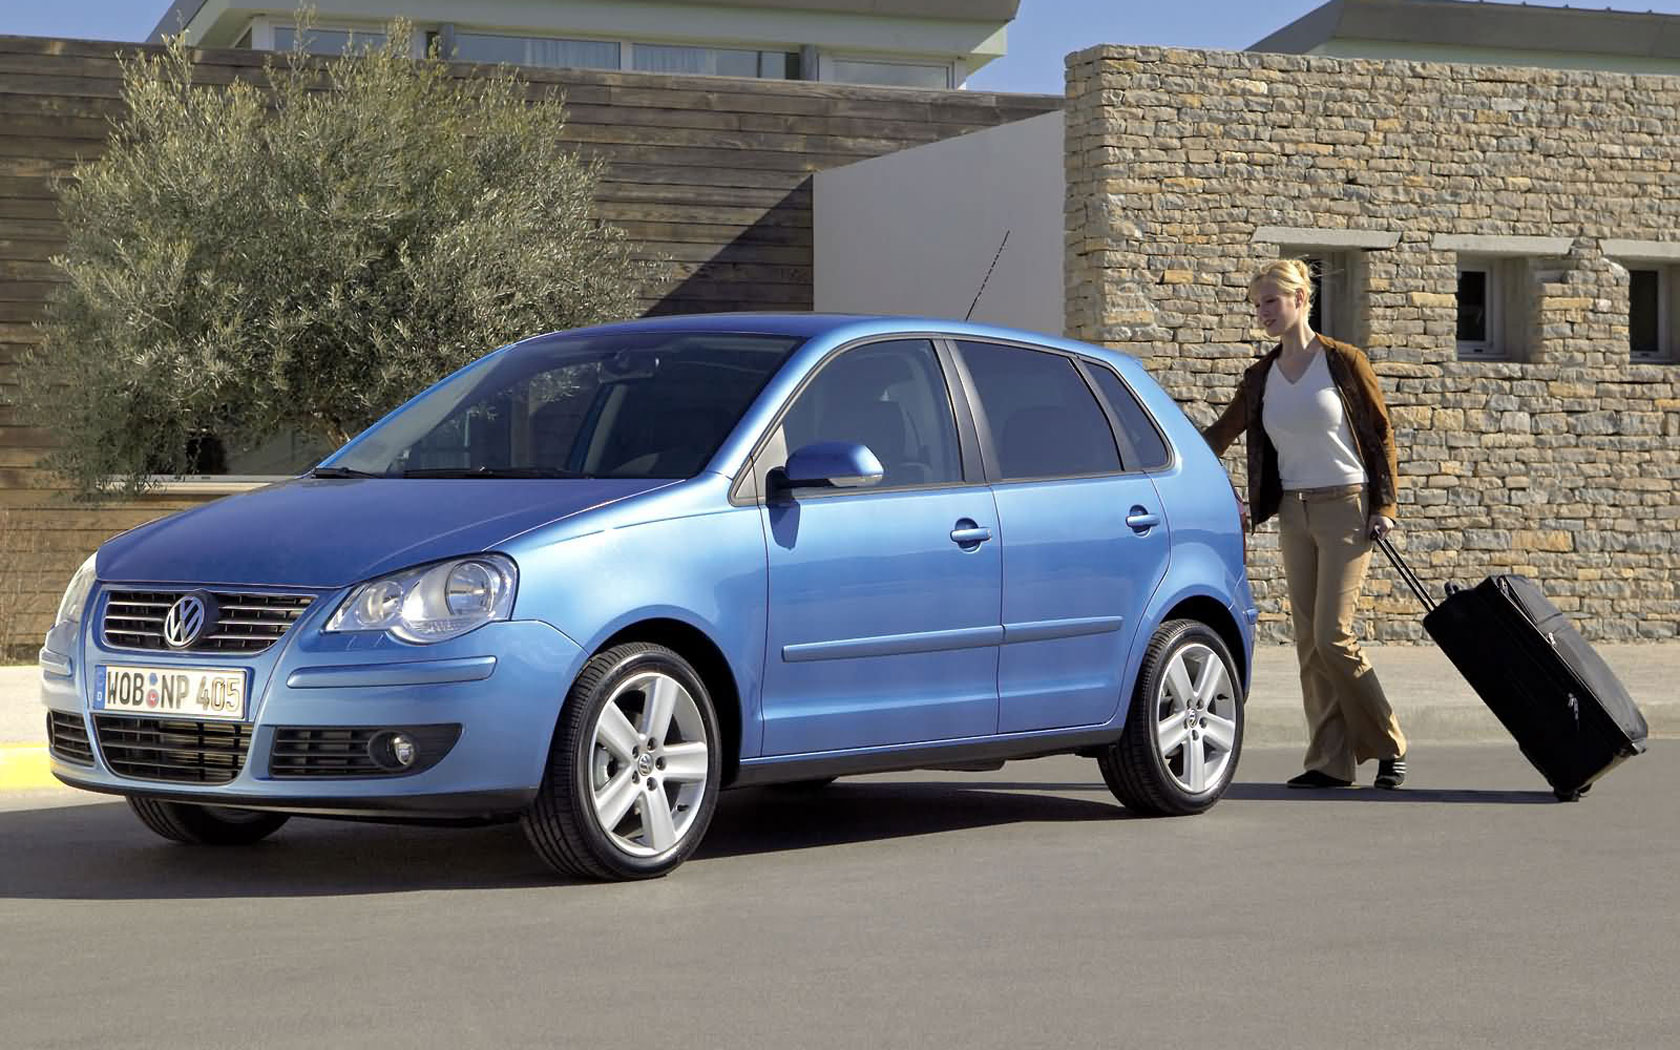  Volkswagen Polo (2005-2009)